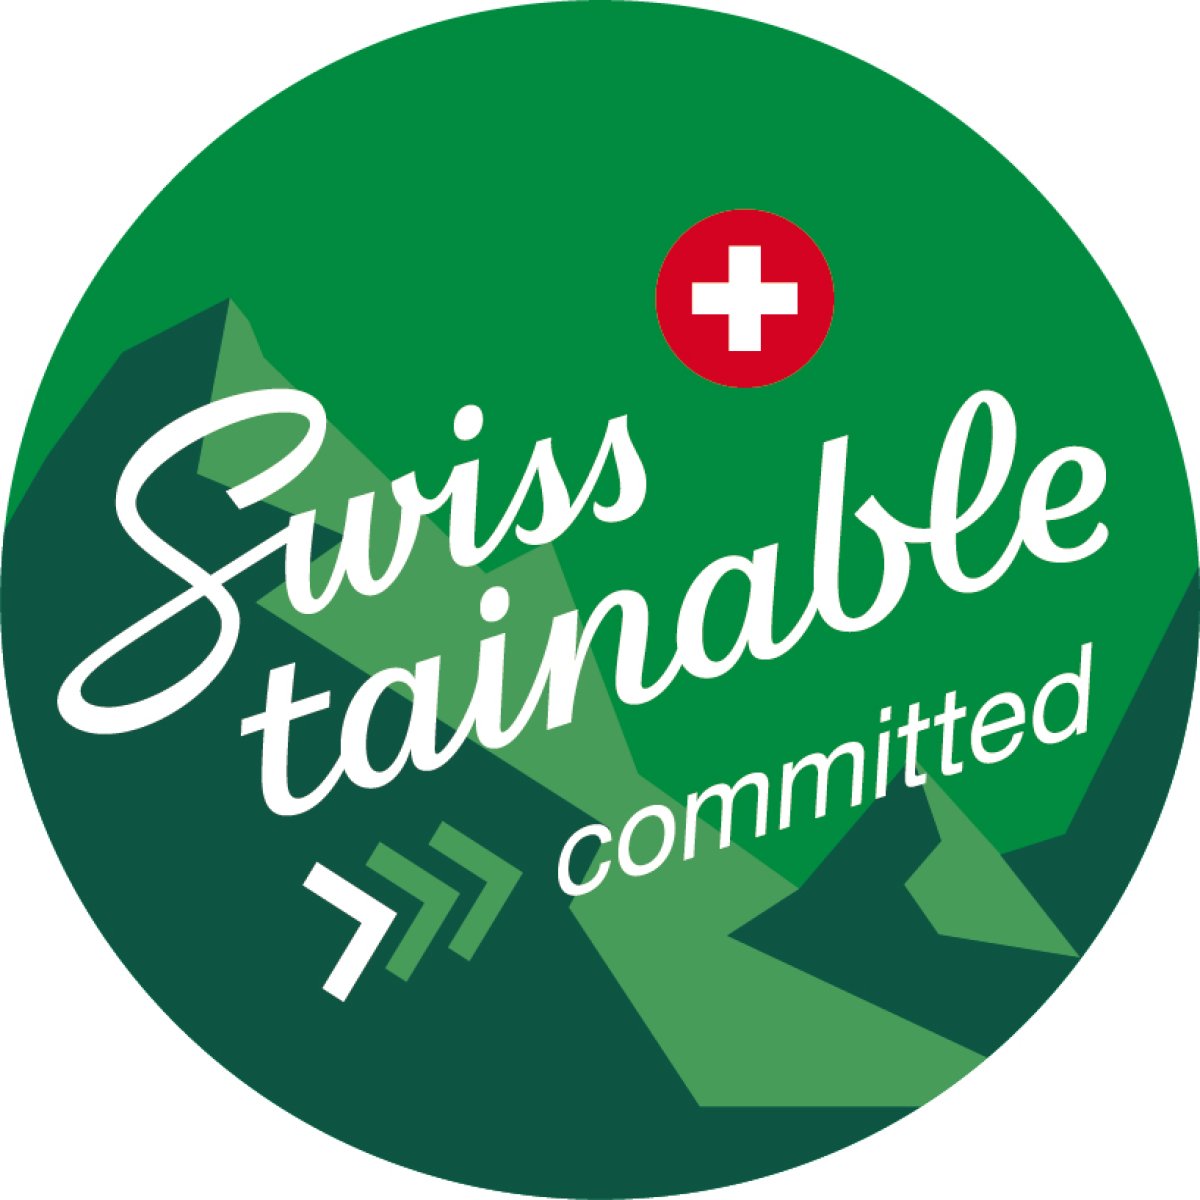 Programme de durabilité Swisstainable - Hotel Vatel Martigny